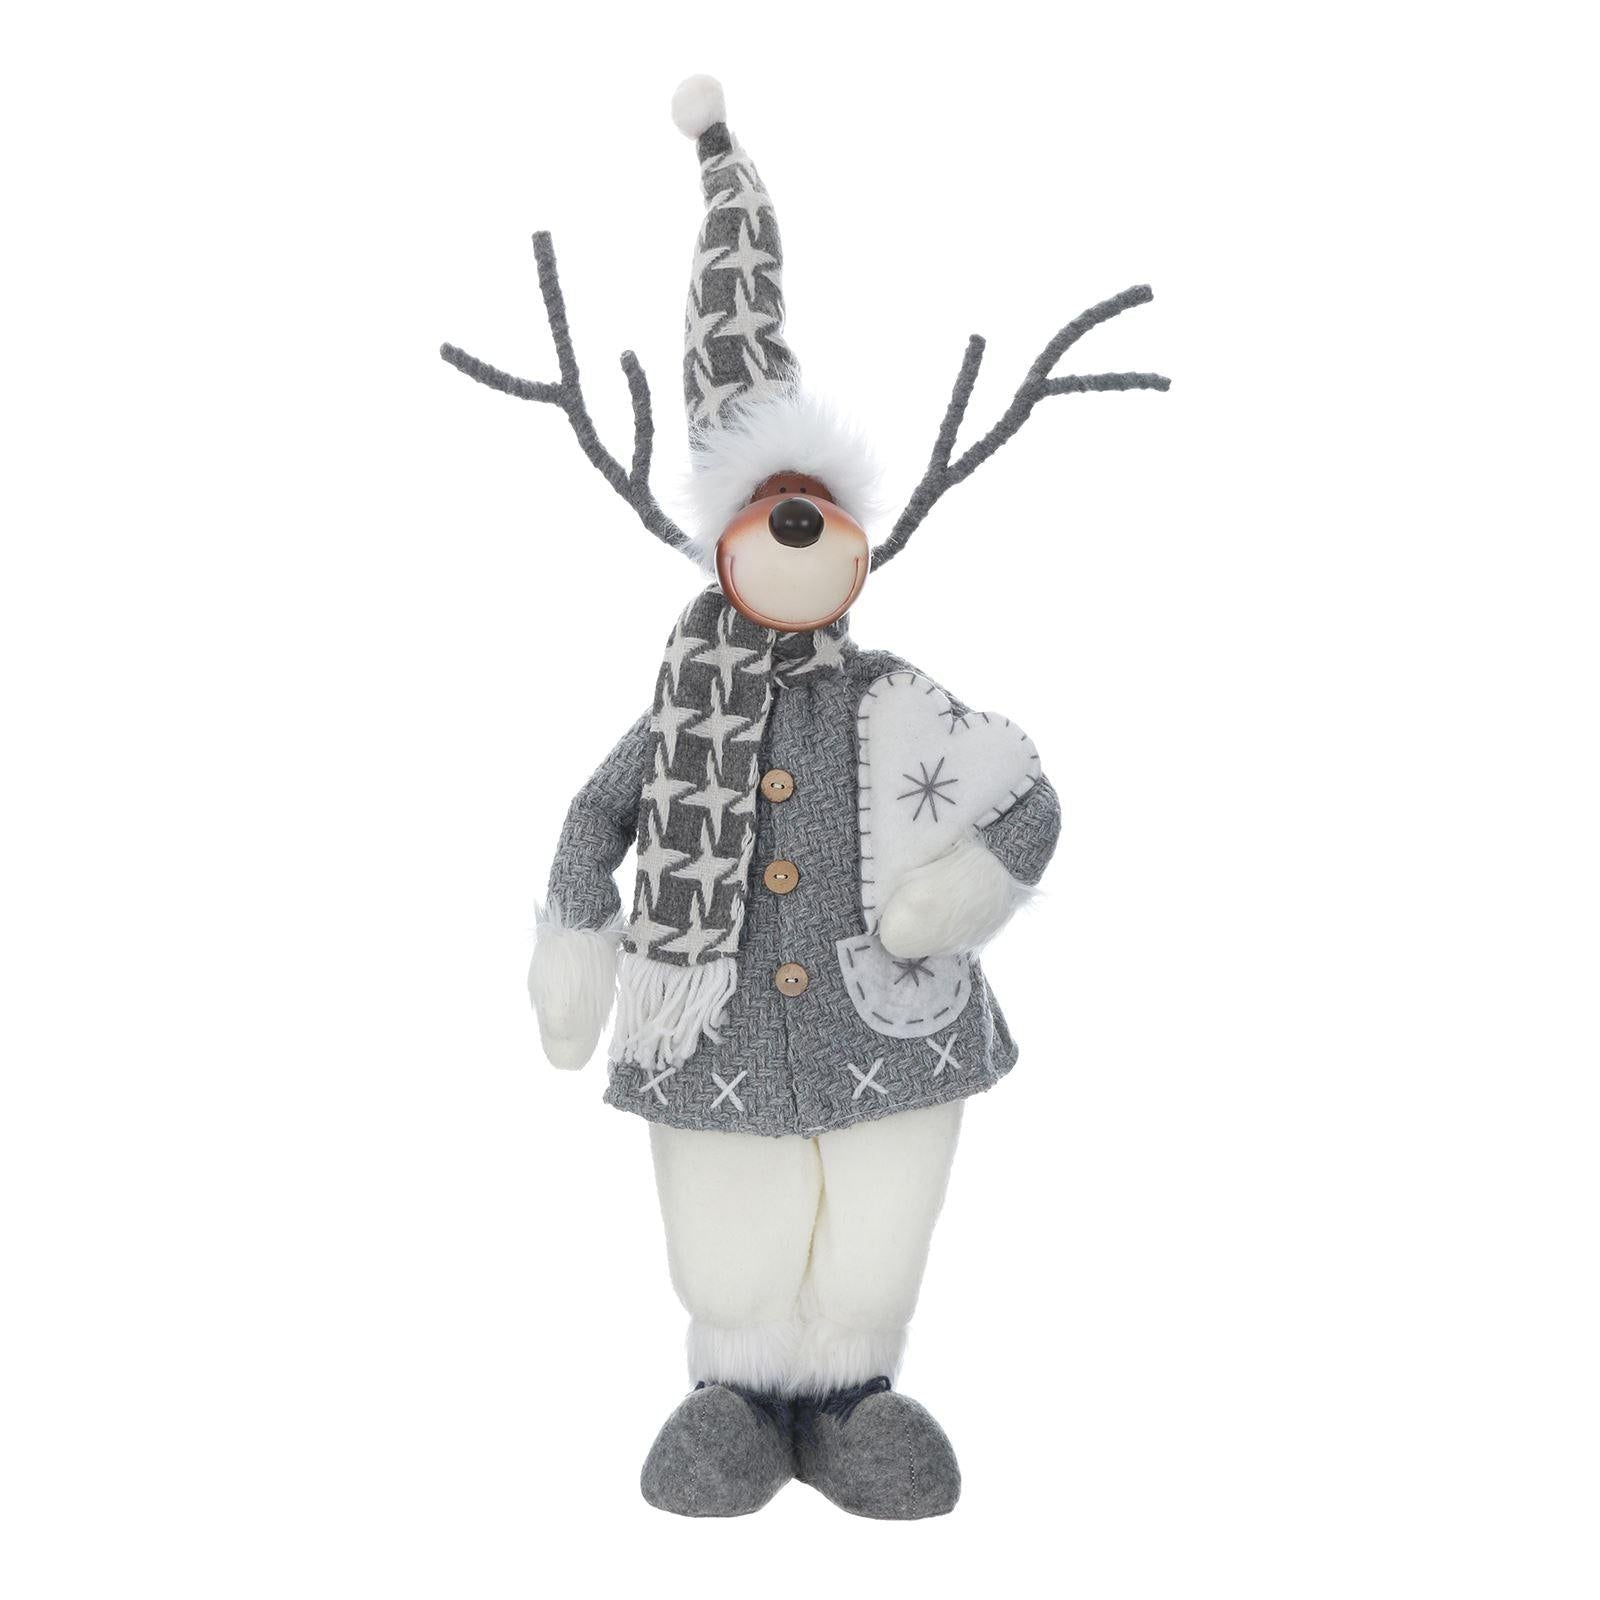 Mr Crimbo 19" Reindeer Figure Christmas Scandi Style Grey White - MrCrimbo.co.uk -XS5739 - Reindeer with Heart -christmas